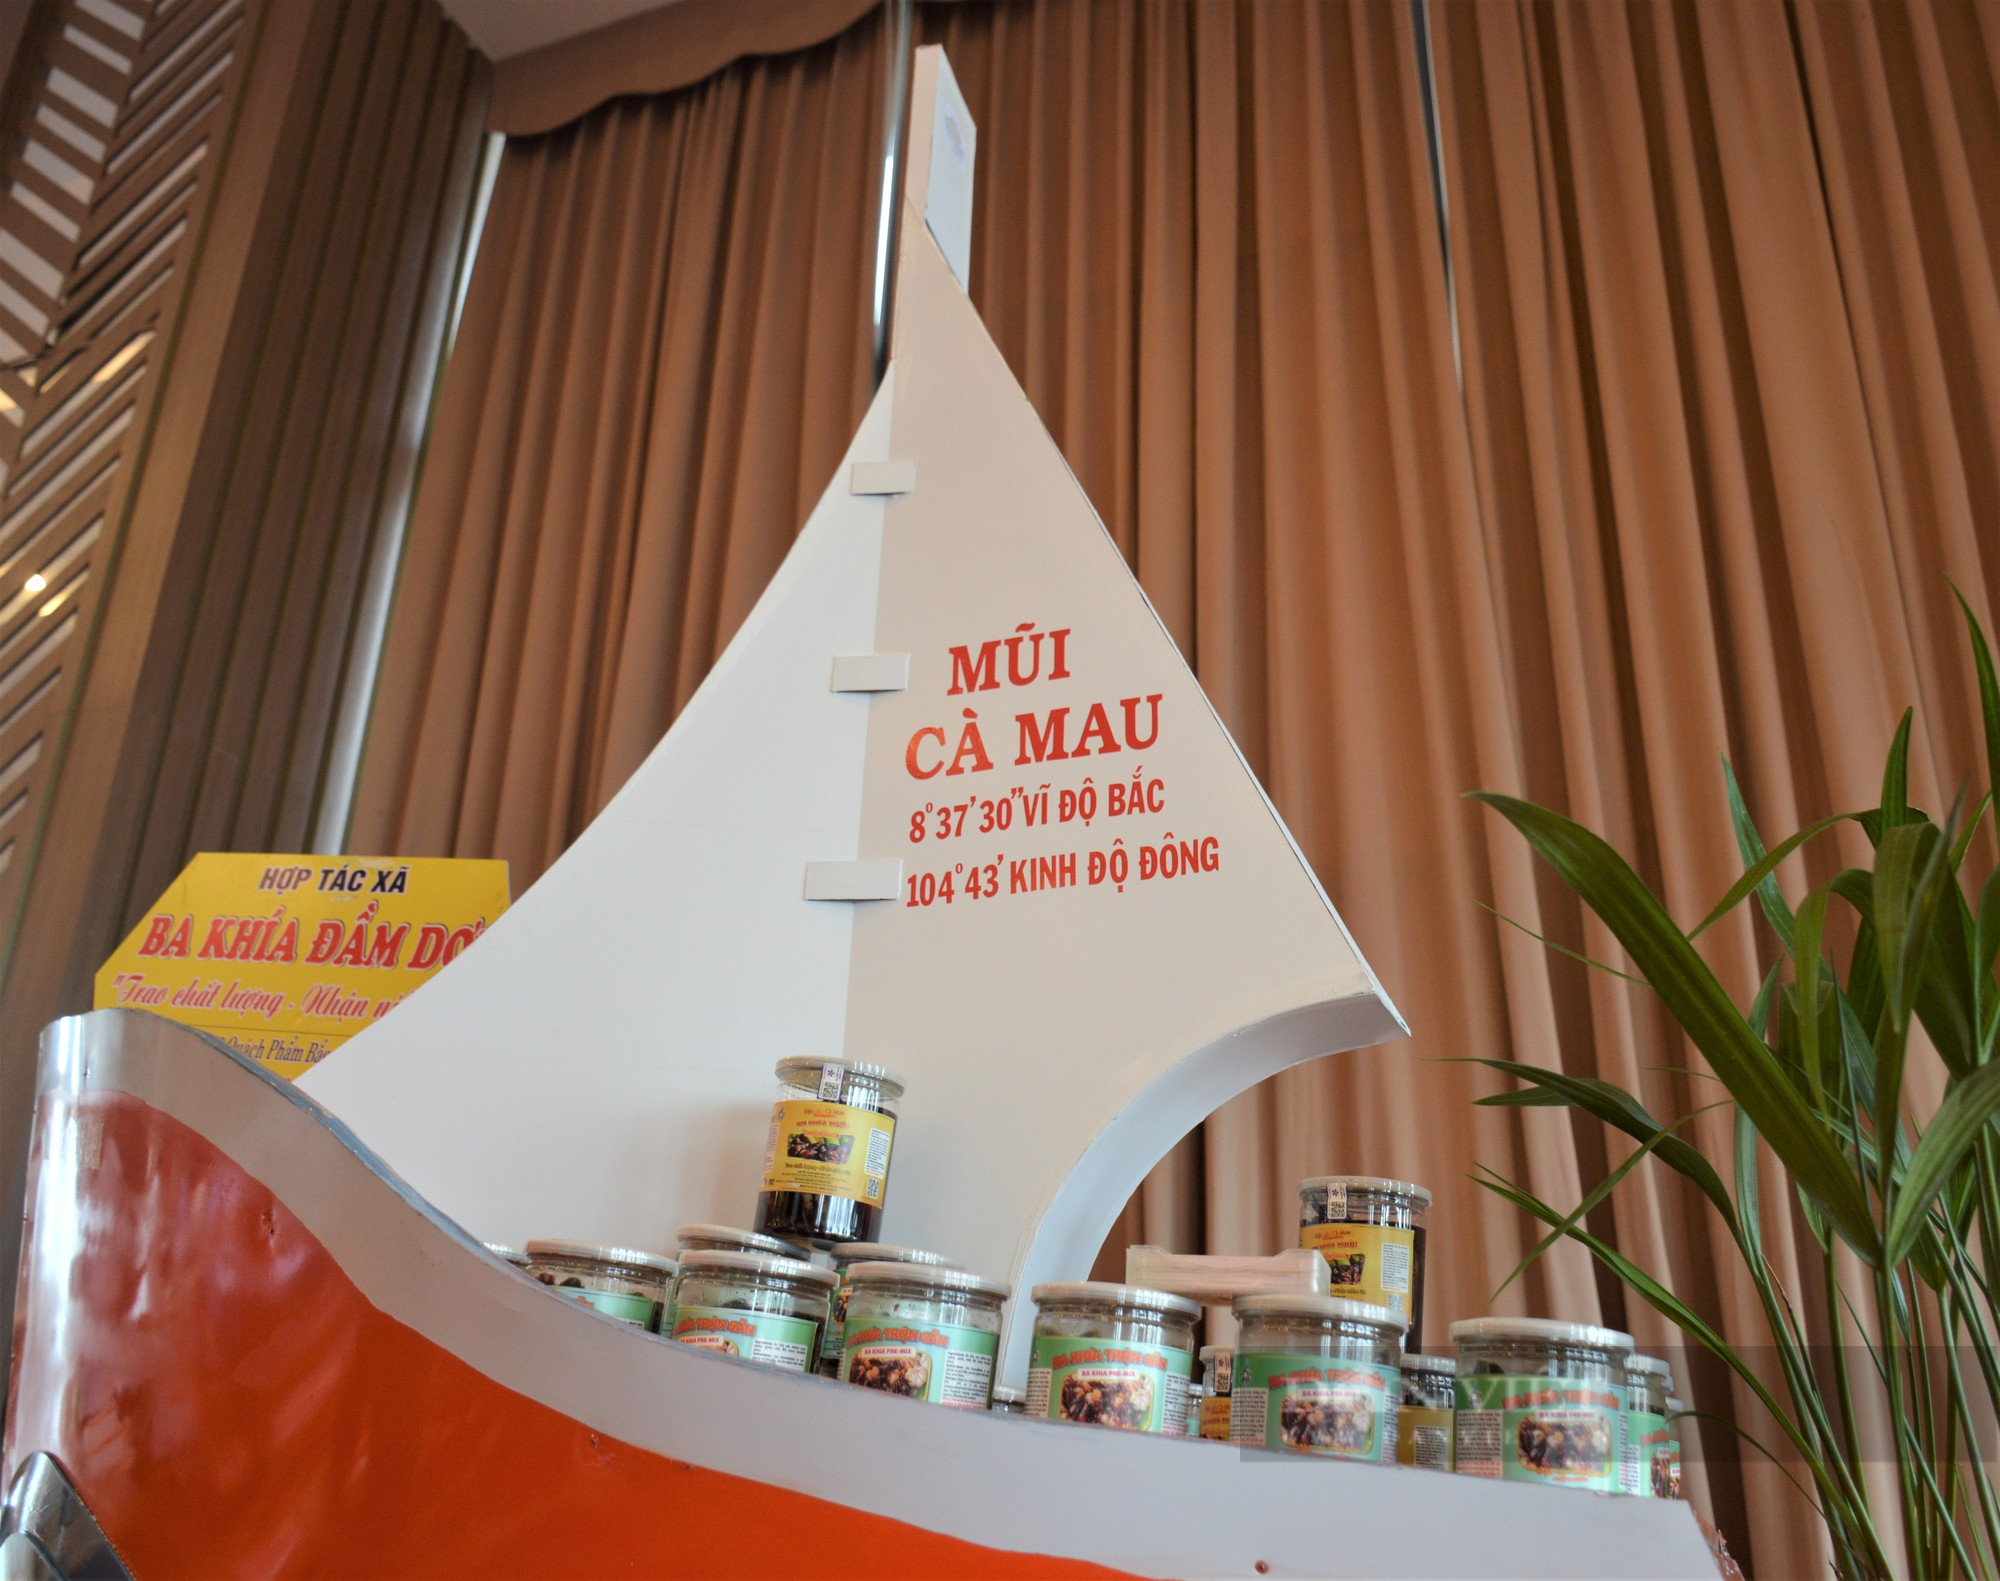 La liệt sản phẩm đặc sản, đặc trưng của tỉnh quy tụ tại ngày hội khởi nghiệp Cà Mau - Ảnh 4.